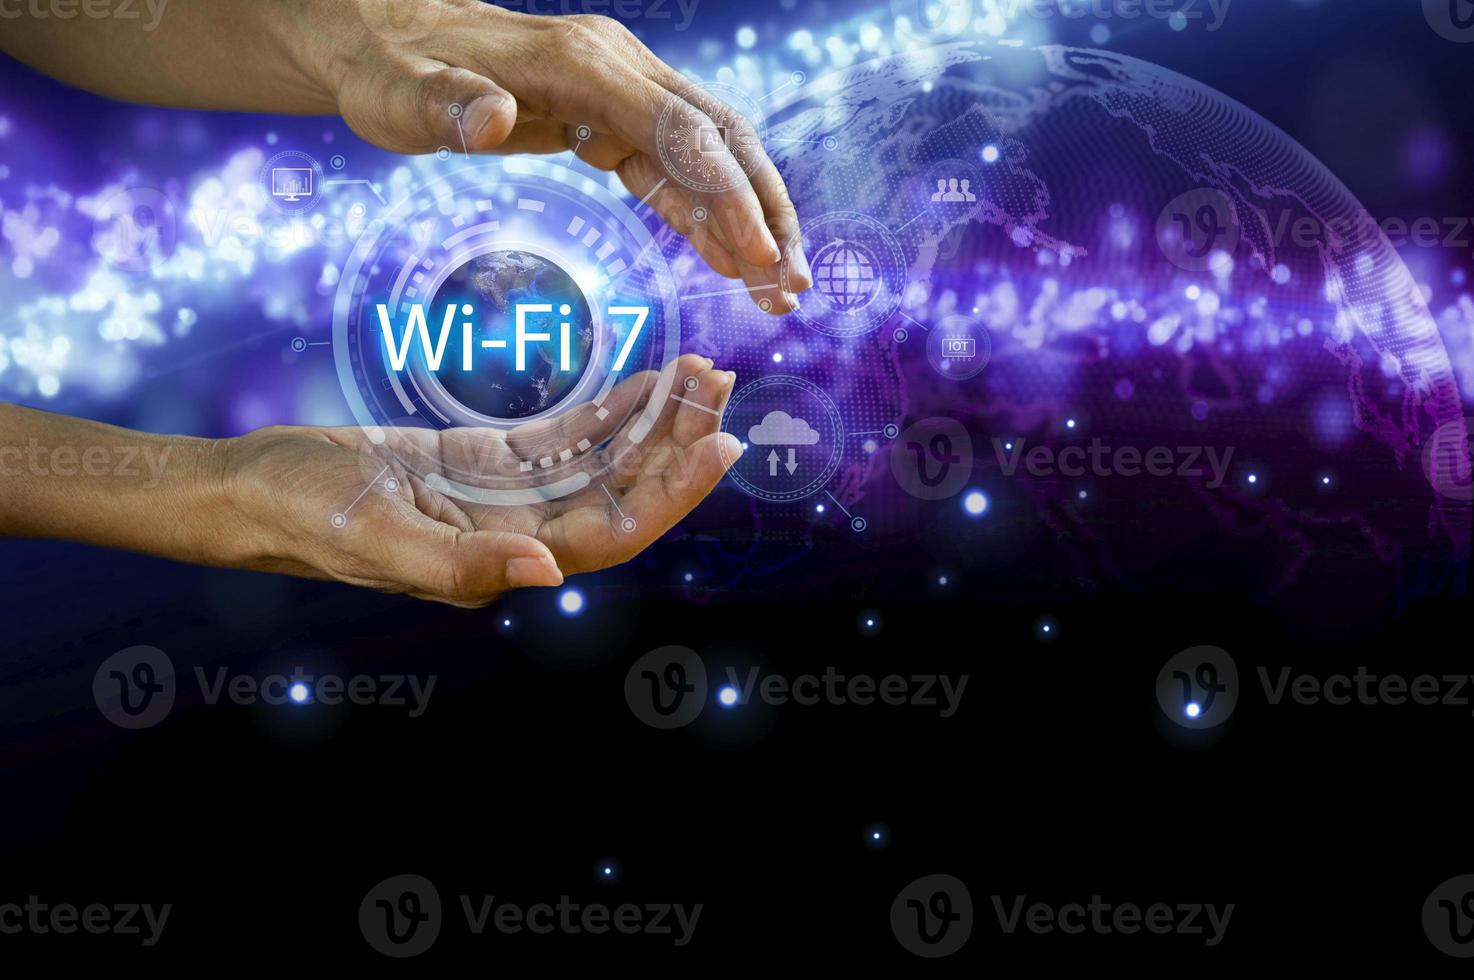 homem conceito usando tecnologia wi-fi 7 conectado ao mundo da internet com novas tecnologias foto